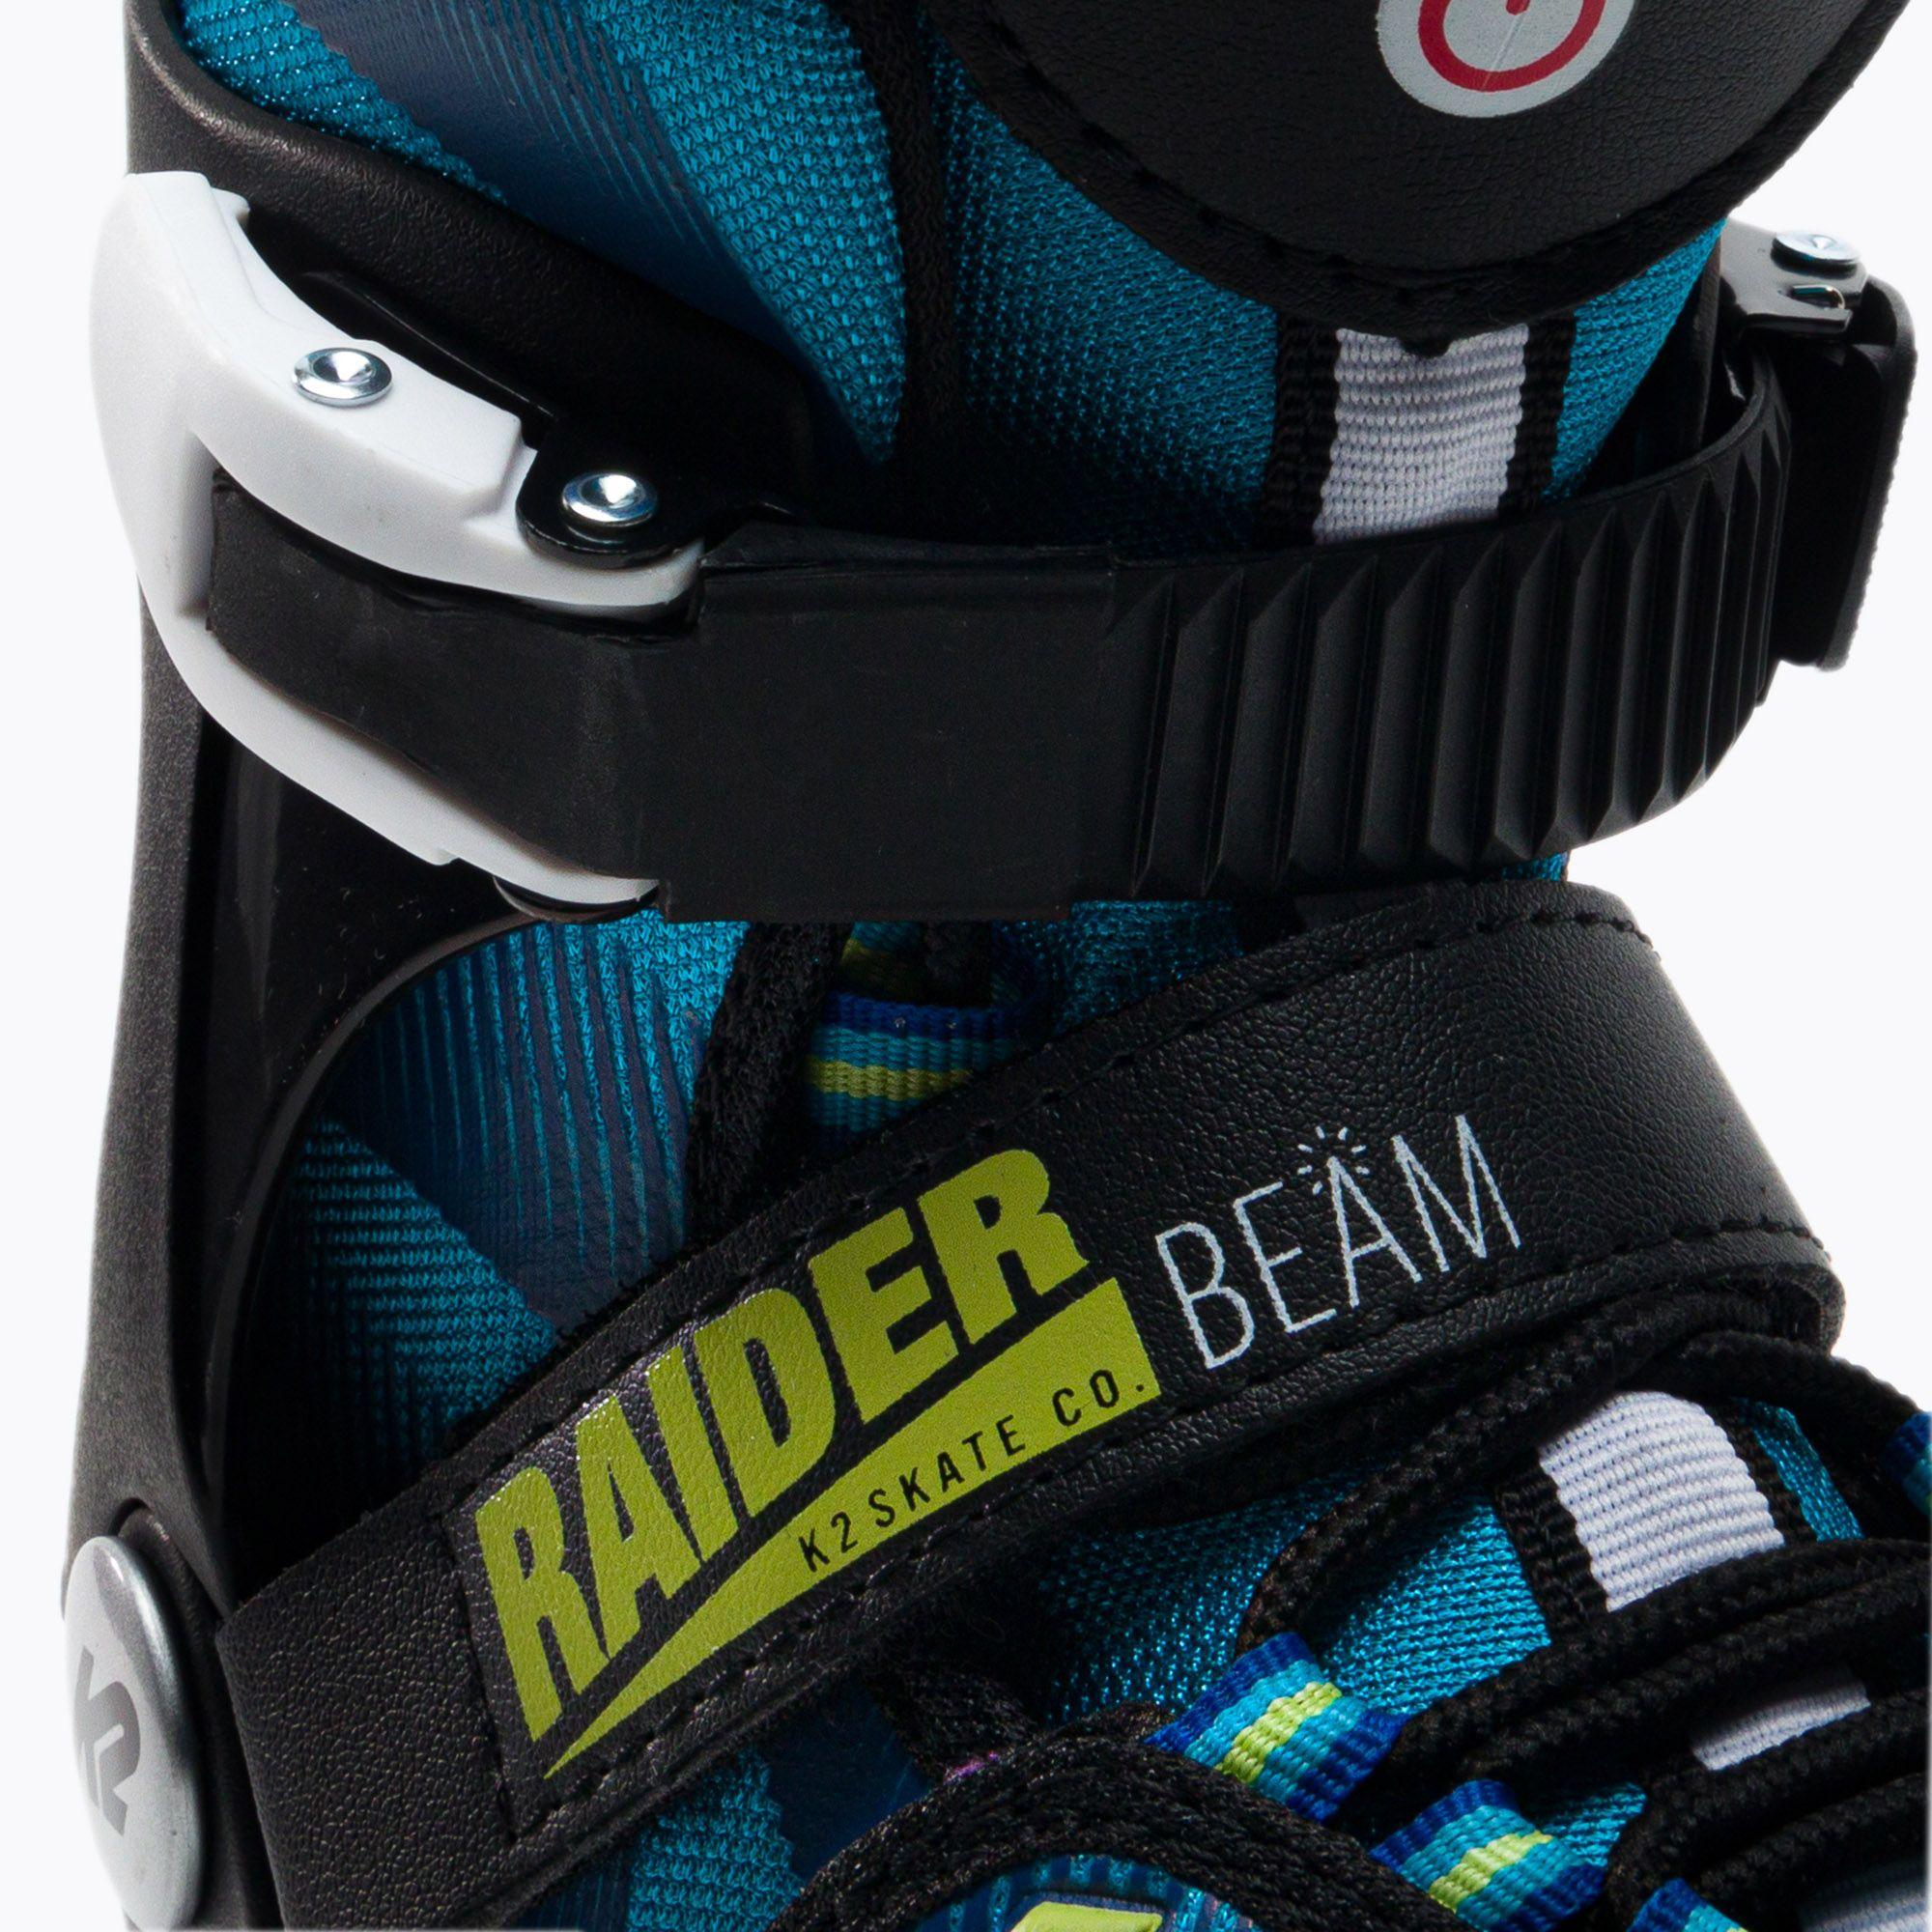 K2: Raider Beam children's inline skates